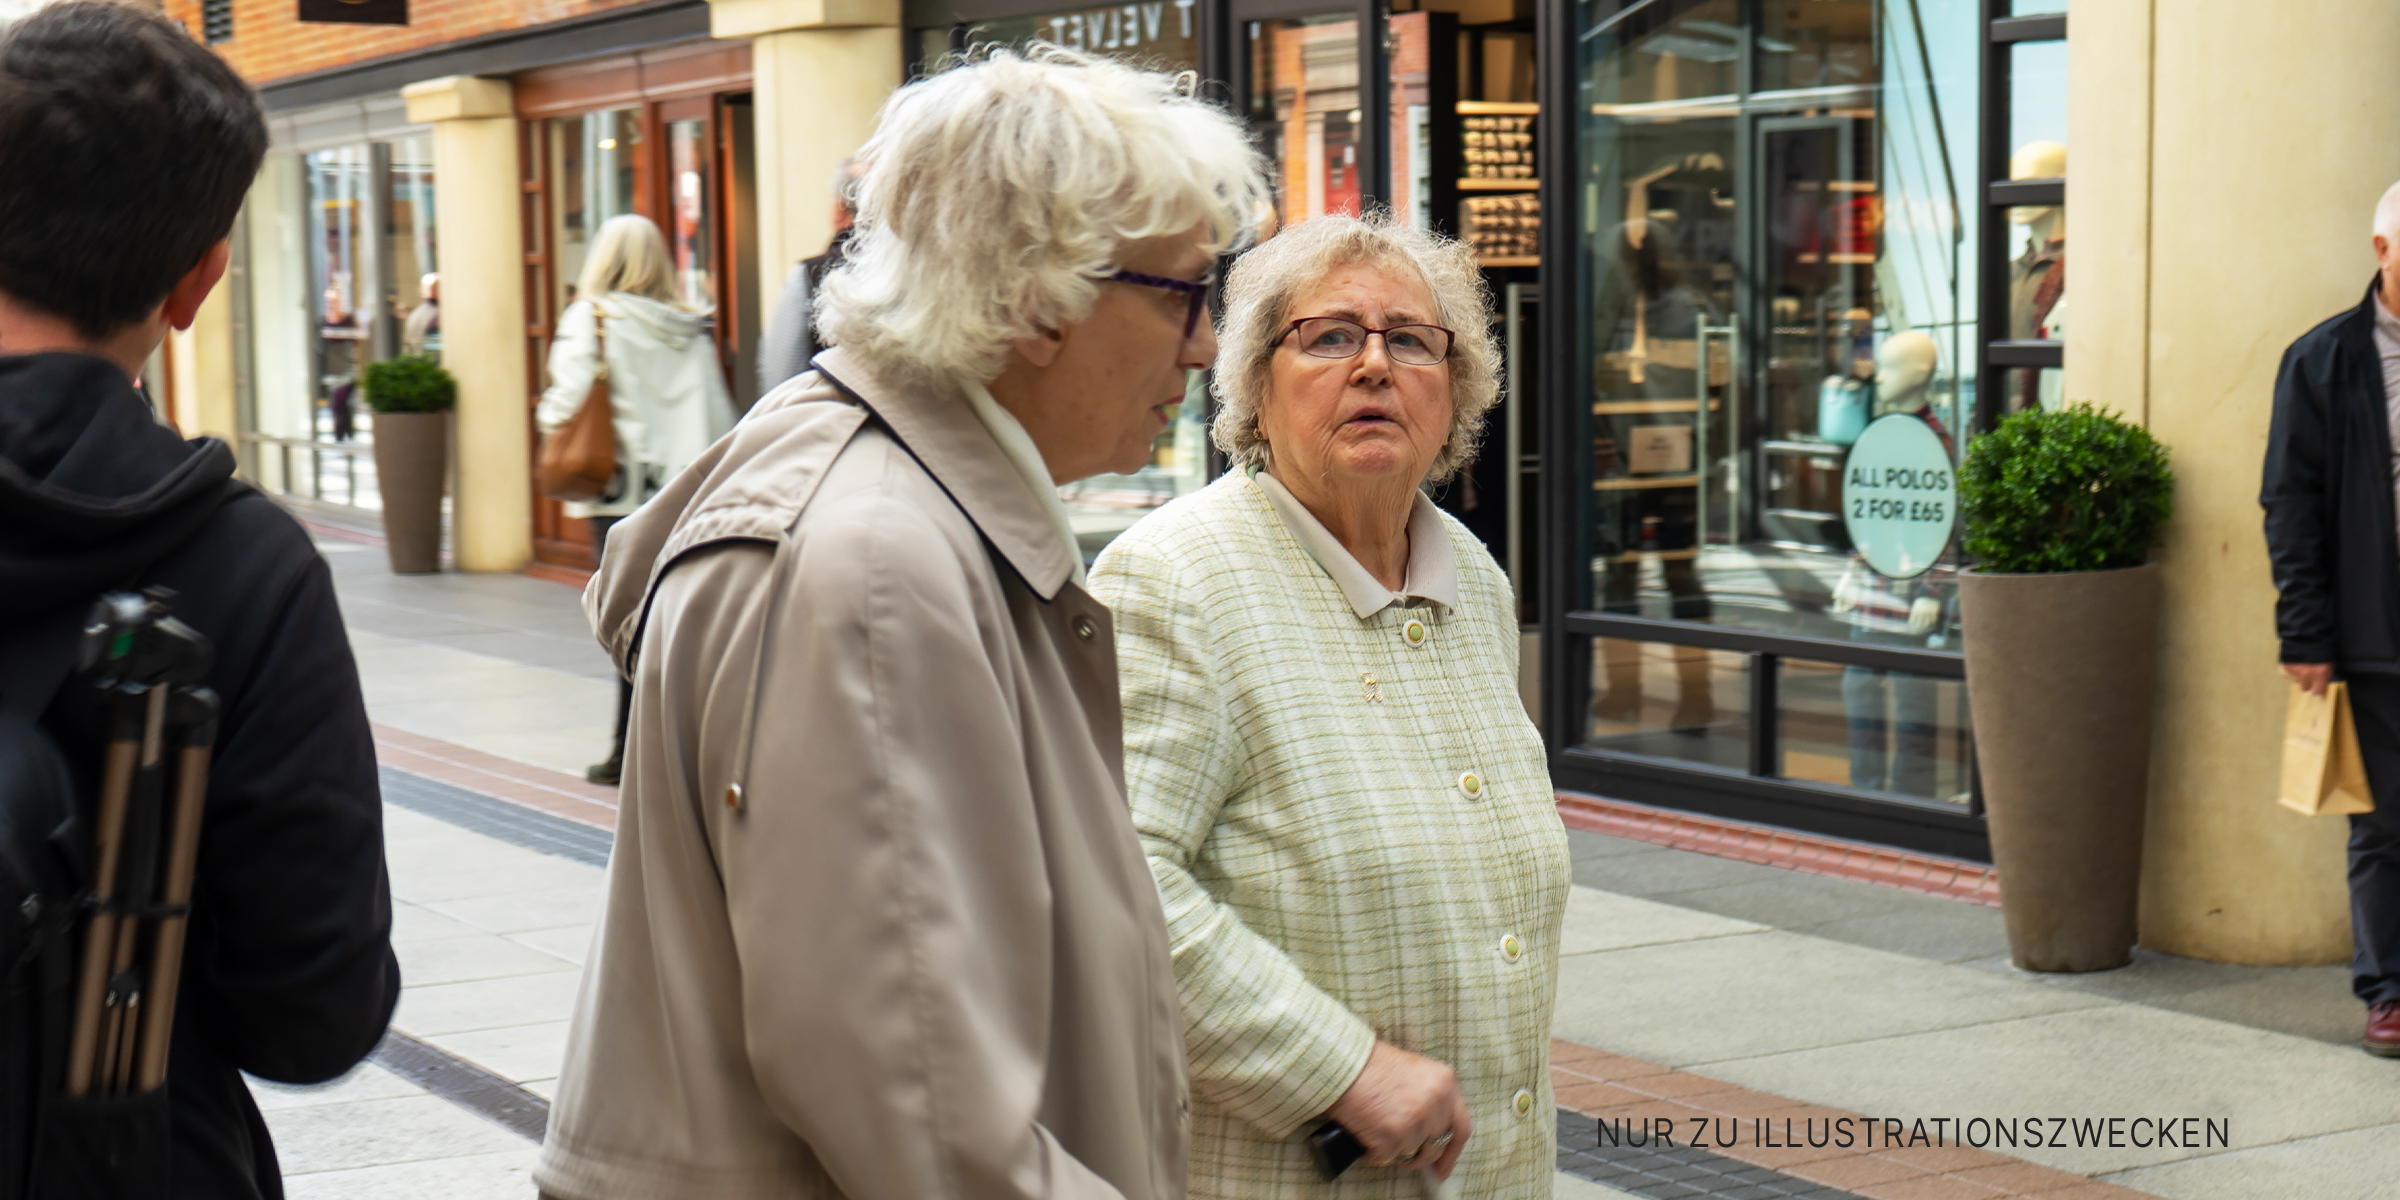 Zwei ältere Frauen gehen auf ein Geschäft zu | Quelle: Shutterstock